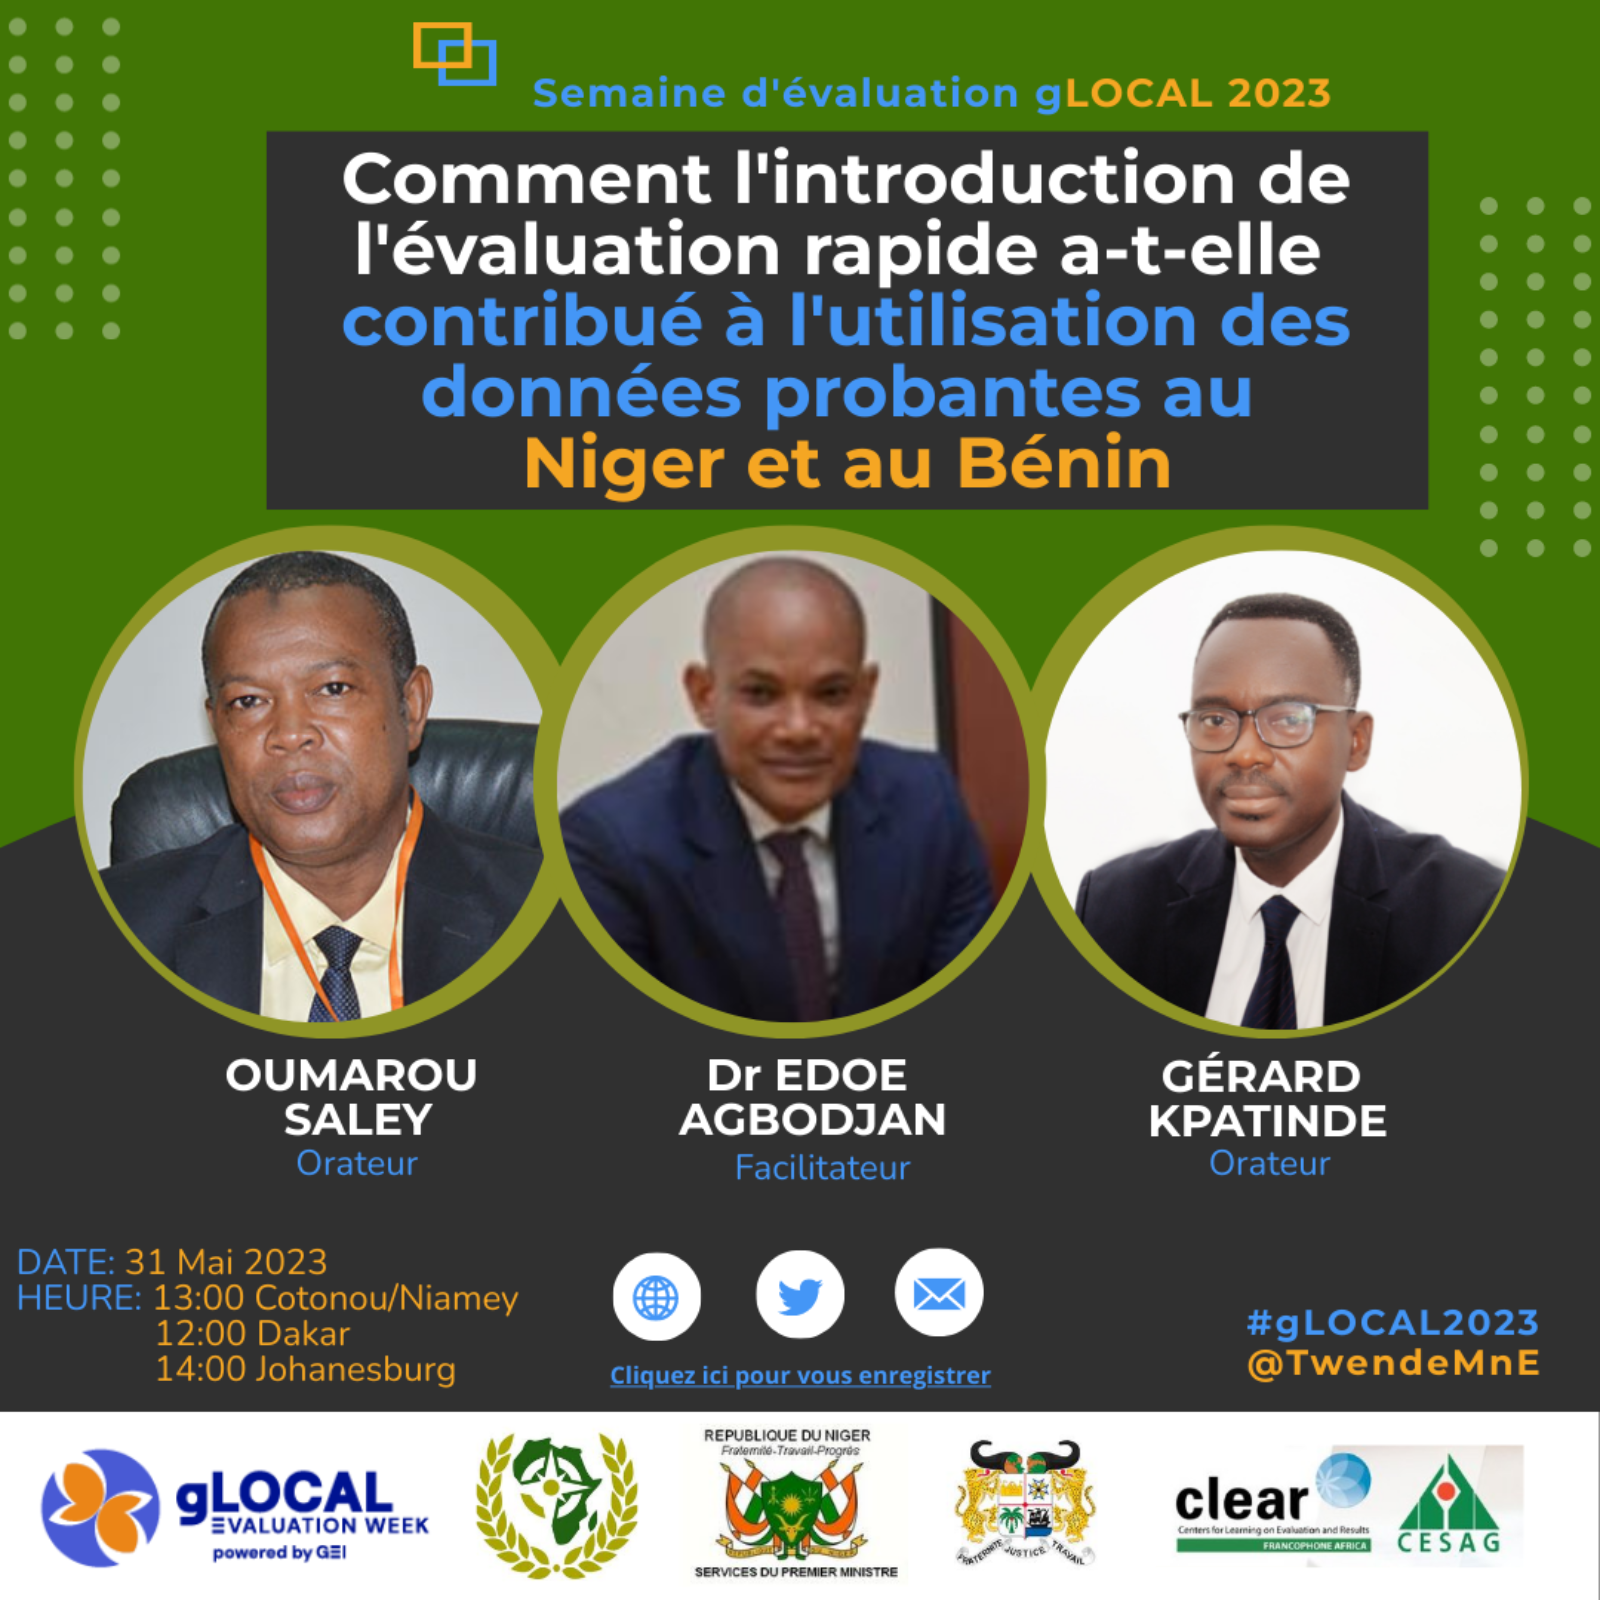 Comment l’introduction de l’évaluation rapide a-t-elle contribué à l’utilisation des données probantes au Niger et au Bénin